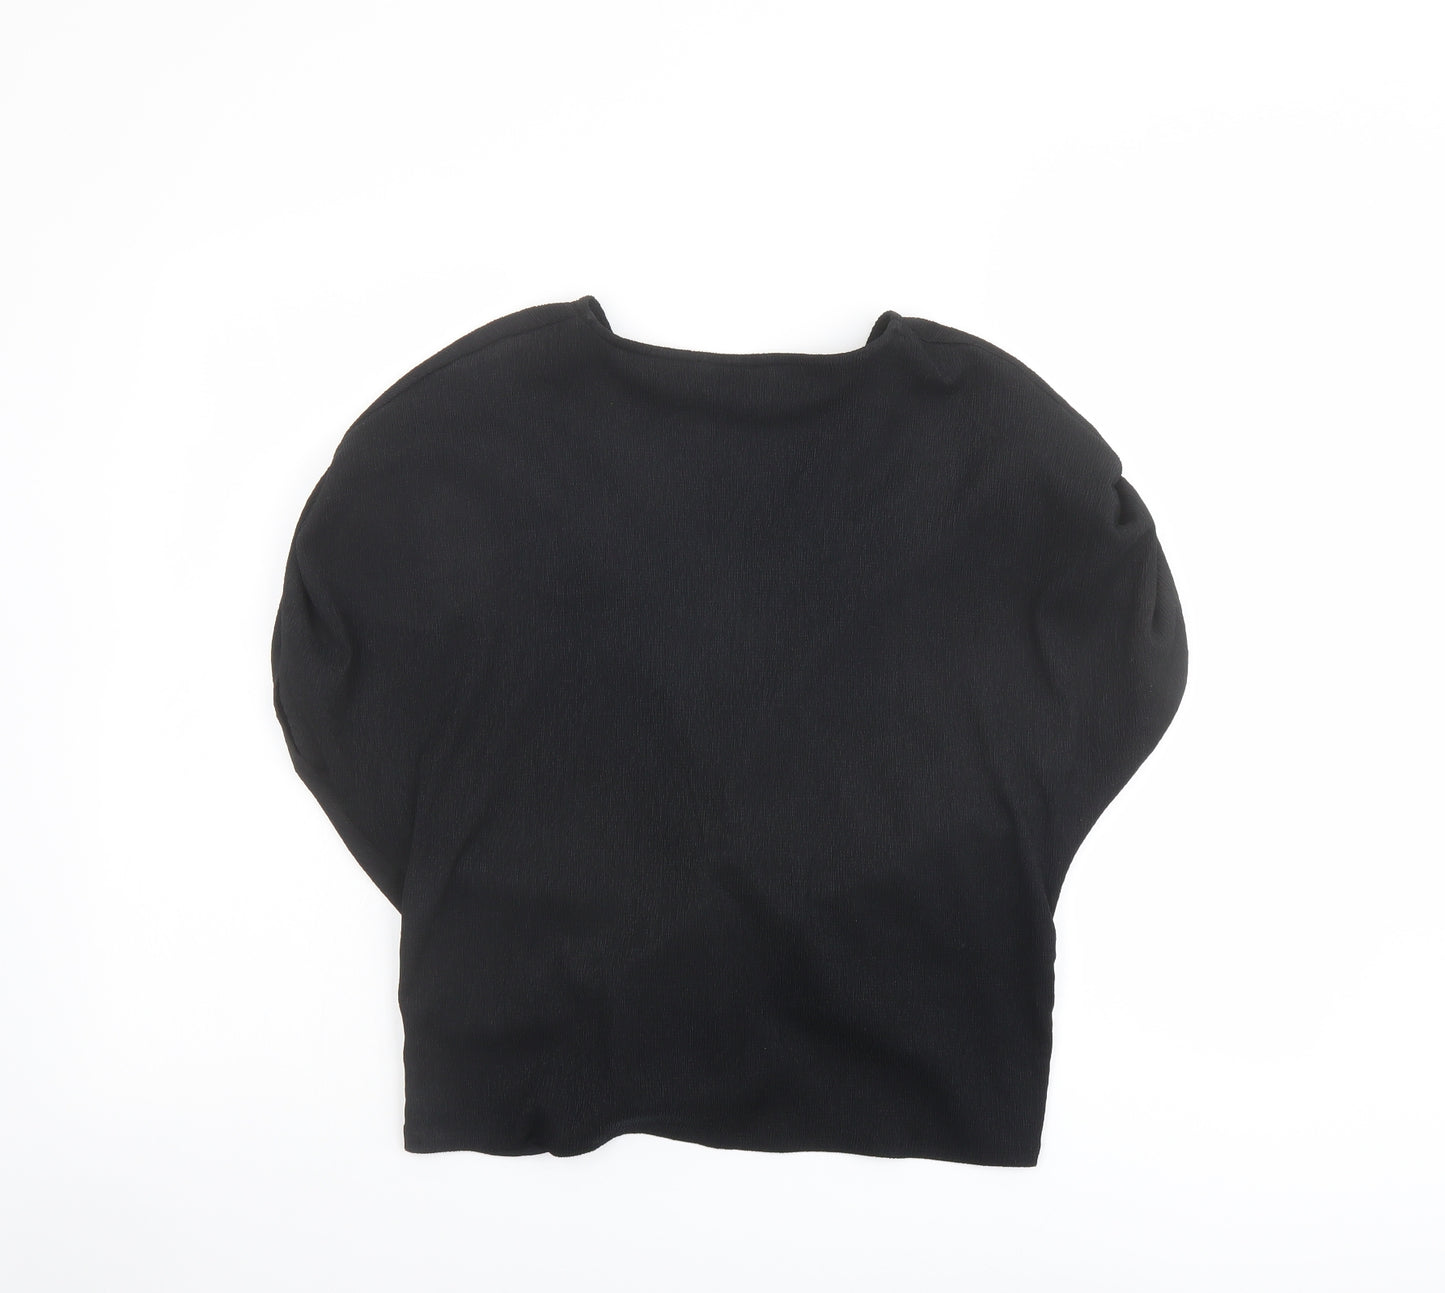 Marks and Spencer Womens Black Polyester Basic Blouse Size 14 V-Neck